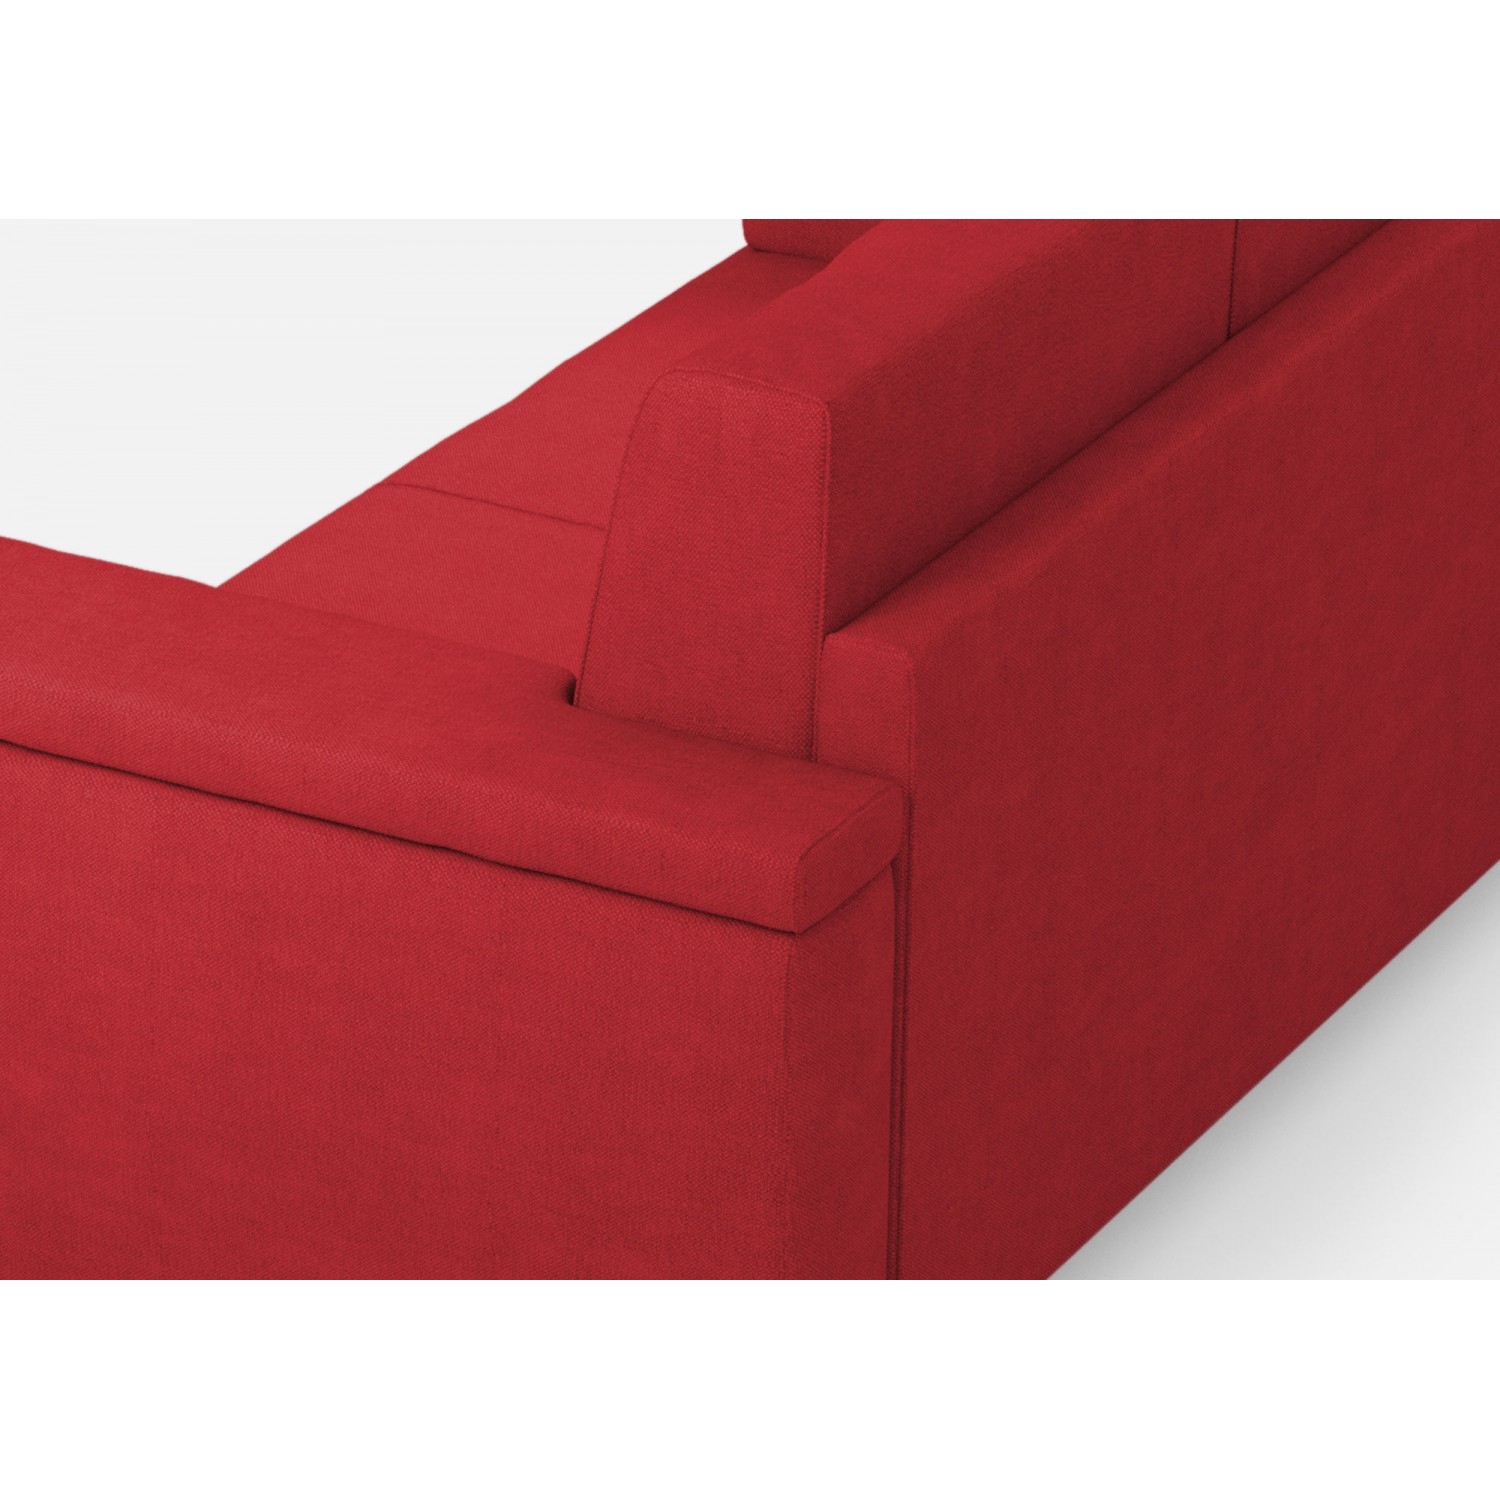 Ityhome Divano Marrak 3 posti (tre sedute da 60cm) misure esterne L.208cm colore rosso